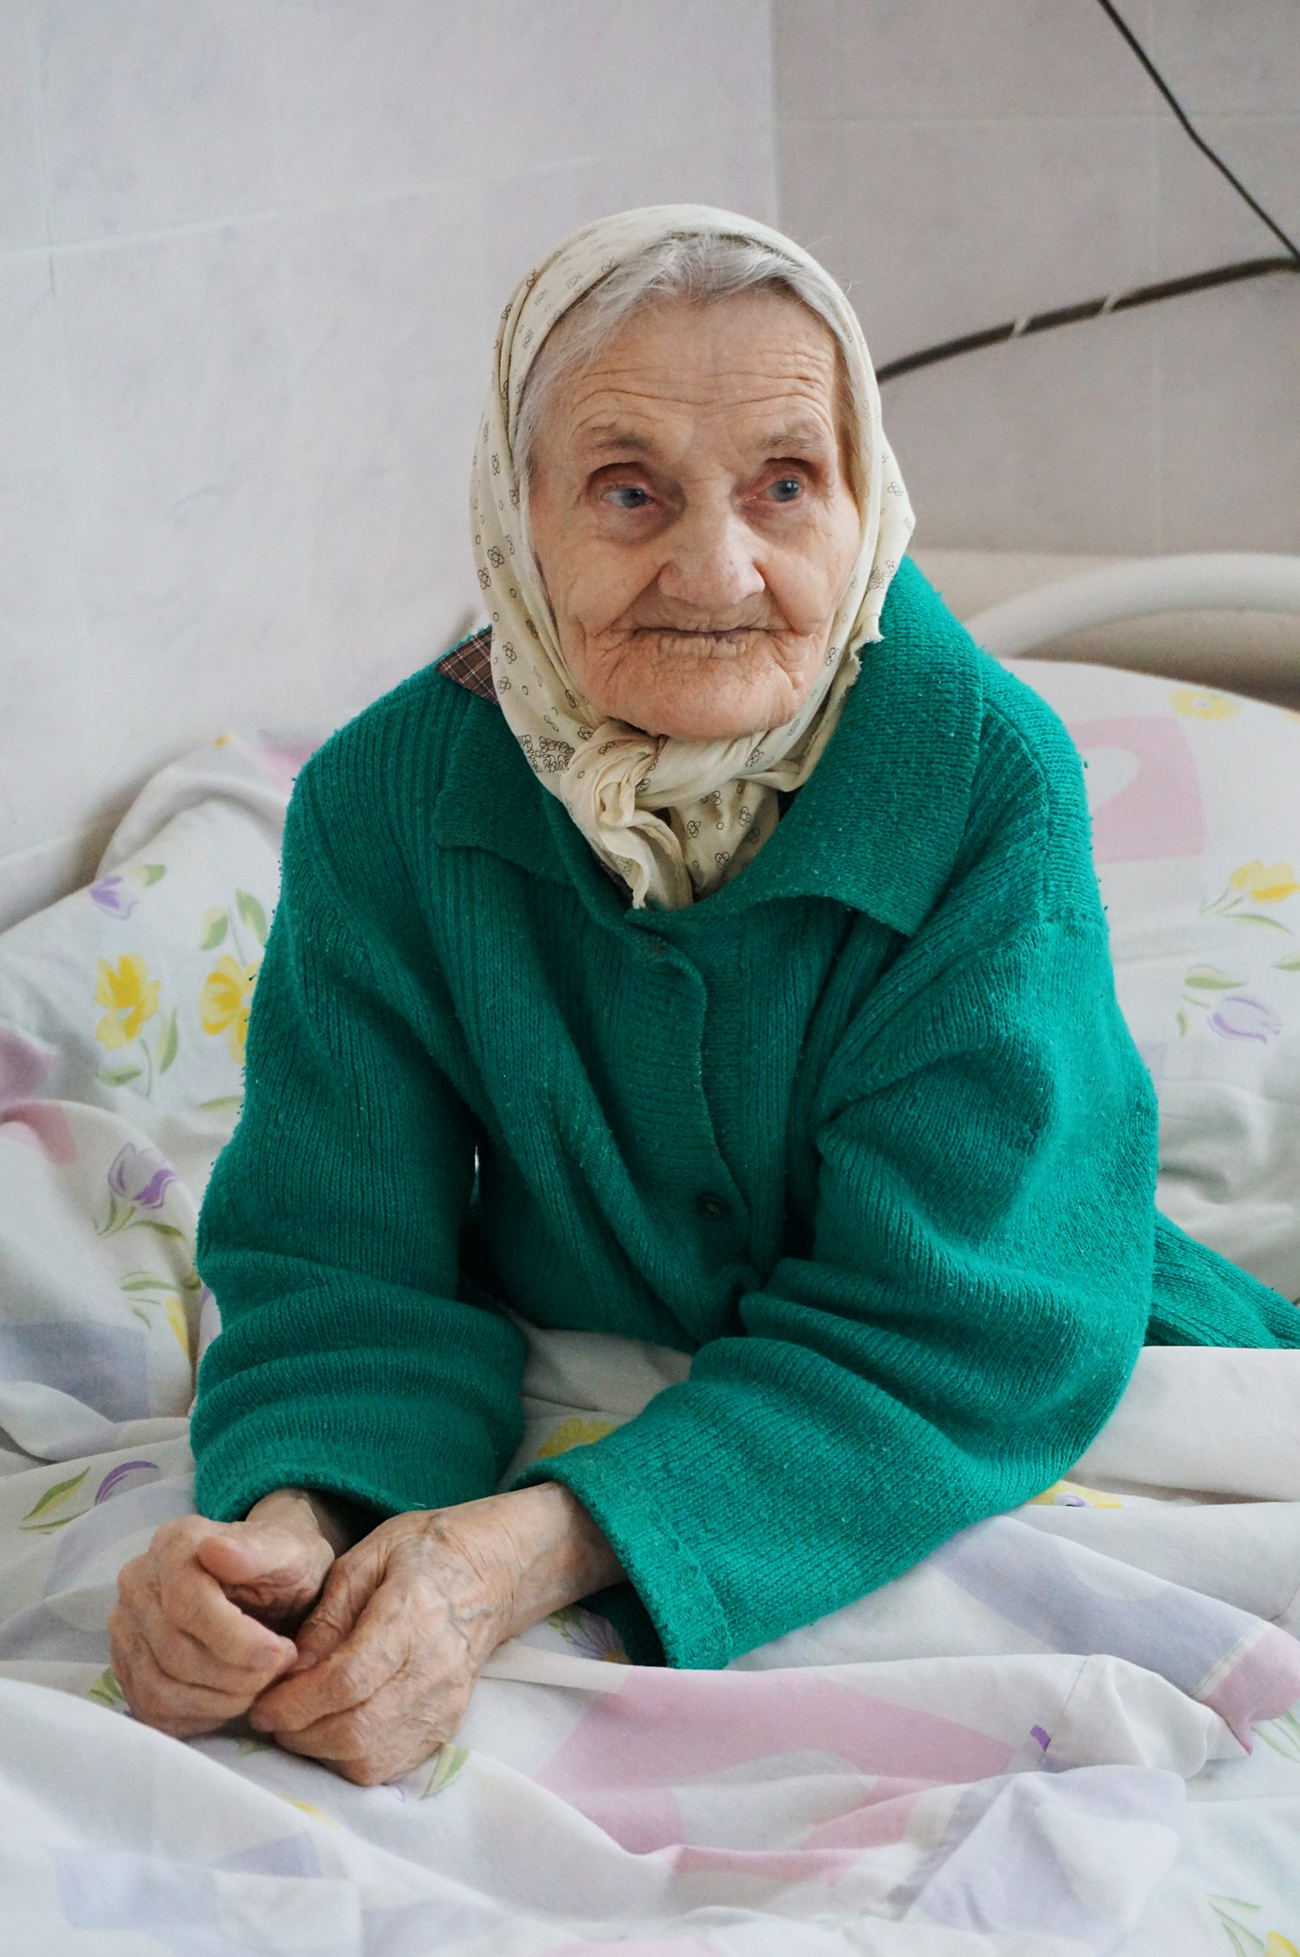 Un’anziana signora seguita dalla fondazione. Fonte: www.vk.com/starikamru